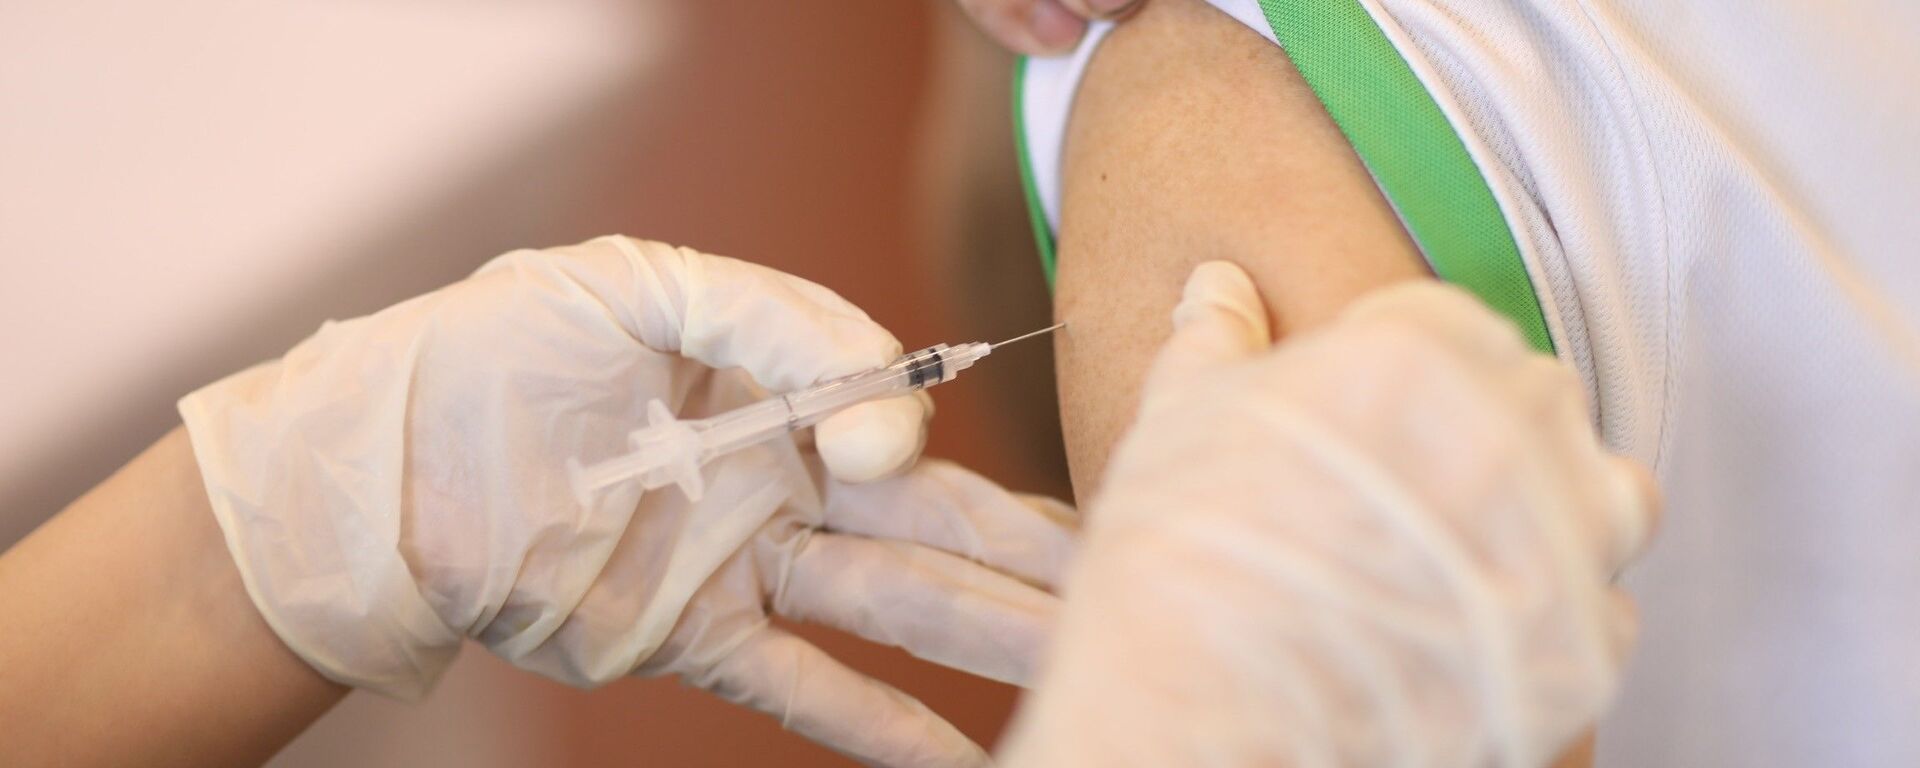 Nhân viên y tế tiêm vaccine phòng COVID-19 cho người dân quận Hoàn Kiếm, chiều 15/9/2021. - Sputnik Việt Nam, 1920, 20.09.2021